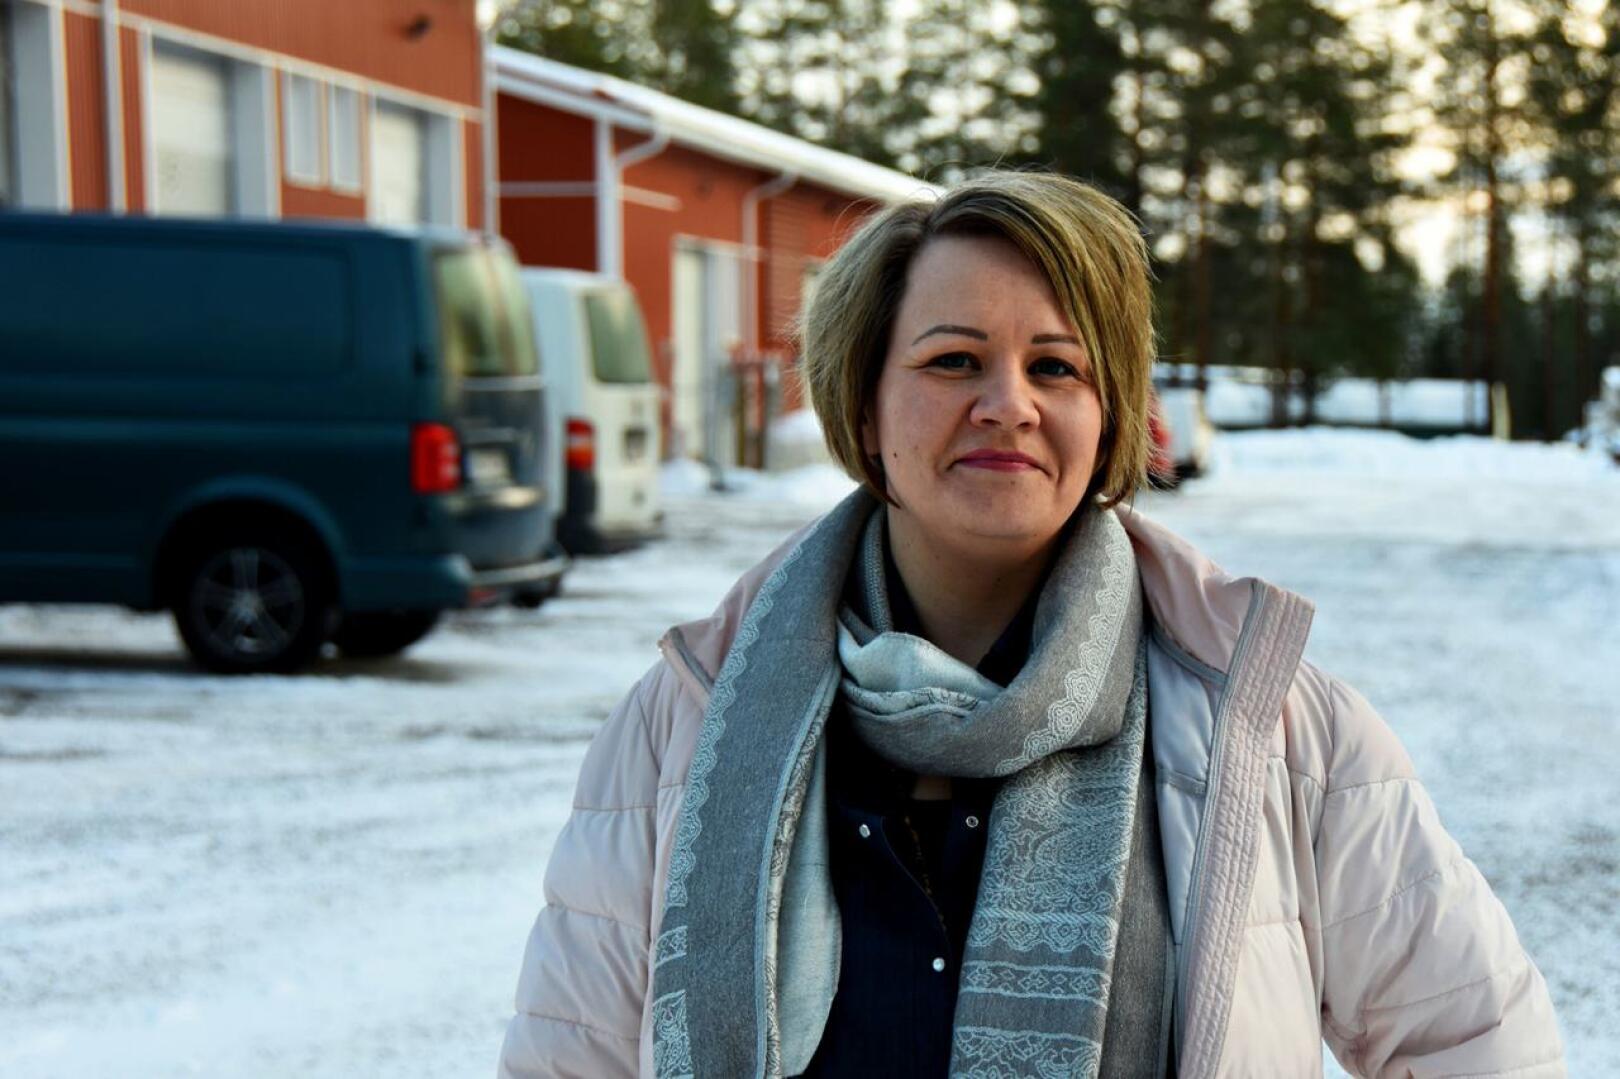 Kaupungin yritysasiamies Marjaana Tuomikoski kertoo Haapavedeltä löytyvän 132 aktiivisessa tilassa olevaa mikroyritystä, joihin kaikkiin aiotaan ottaa hankkeen tiimoilta yhteyttä.